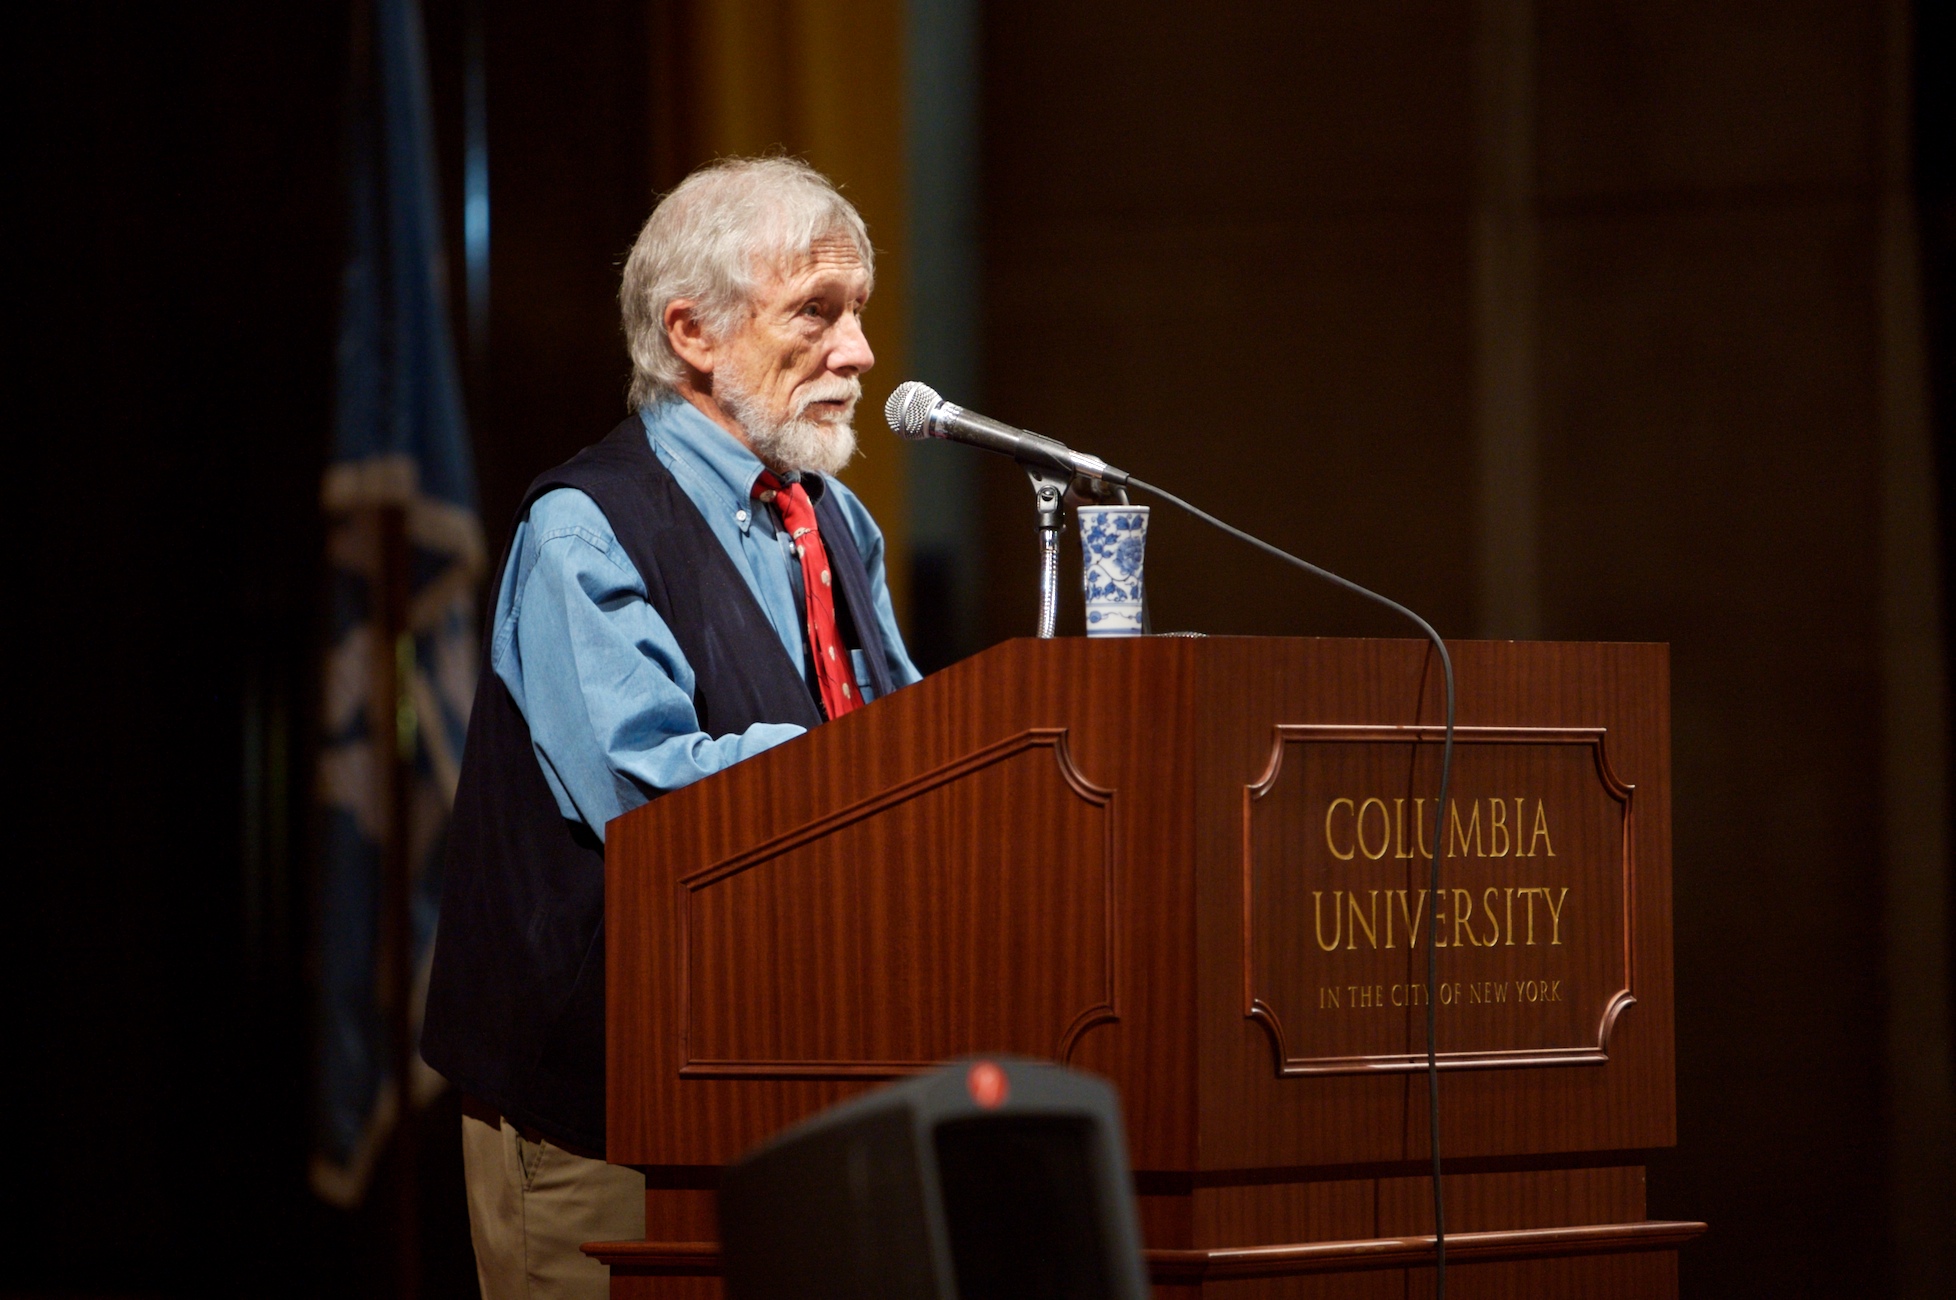 Gary Snyder na Columbia university v roce 2007. Â AmerickĂ˝Â bĂˇsnĂ­k, esejista, environmentalista a bĂ­tnĂ­k.Â Nositel Pulitzerovy ceny. (Foto: Fett â€“ Flickr. LicencovĂˇno pod CC BY 2.0  Wikimedia Commons)